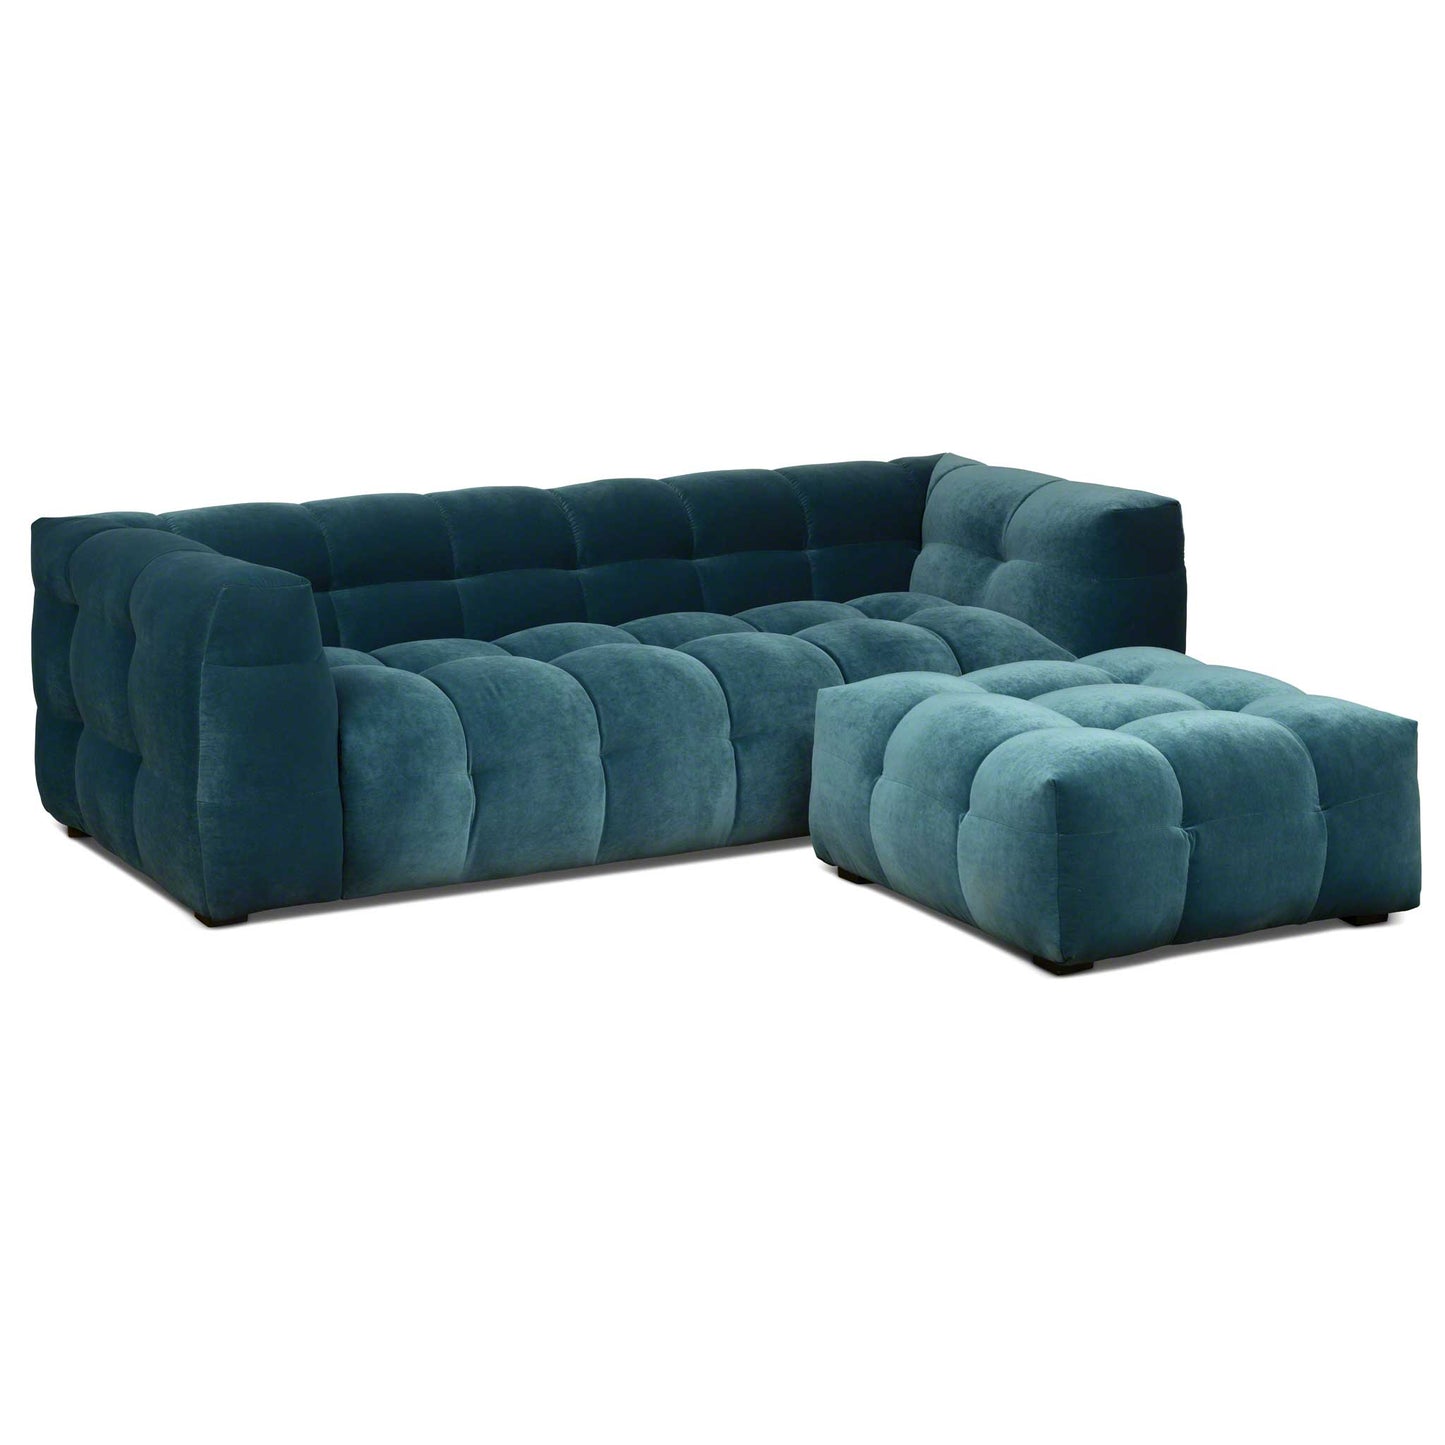 3-sits design soffa i petroleumblå sammet med tillförande fotpall i sammet